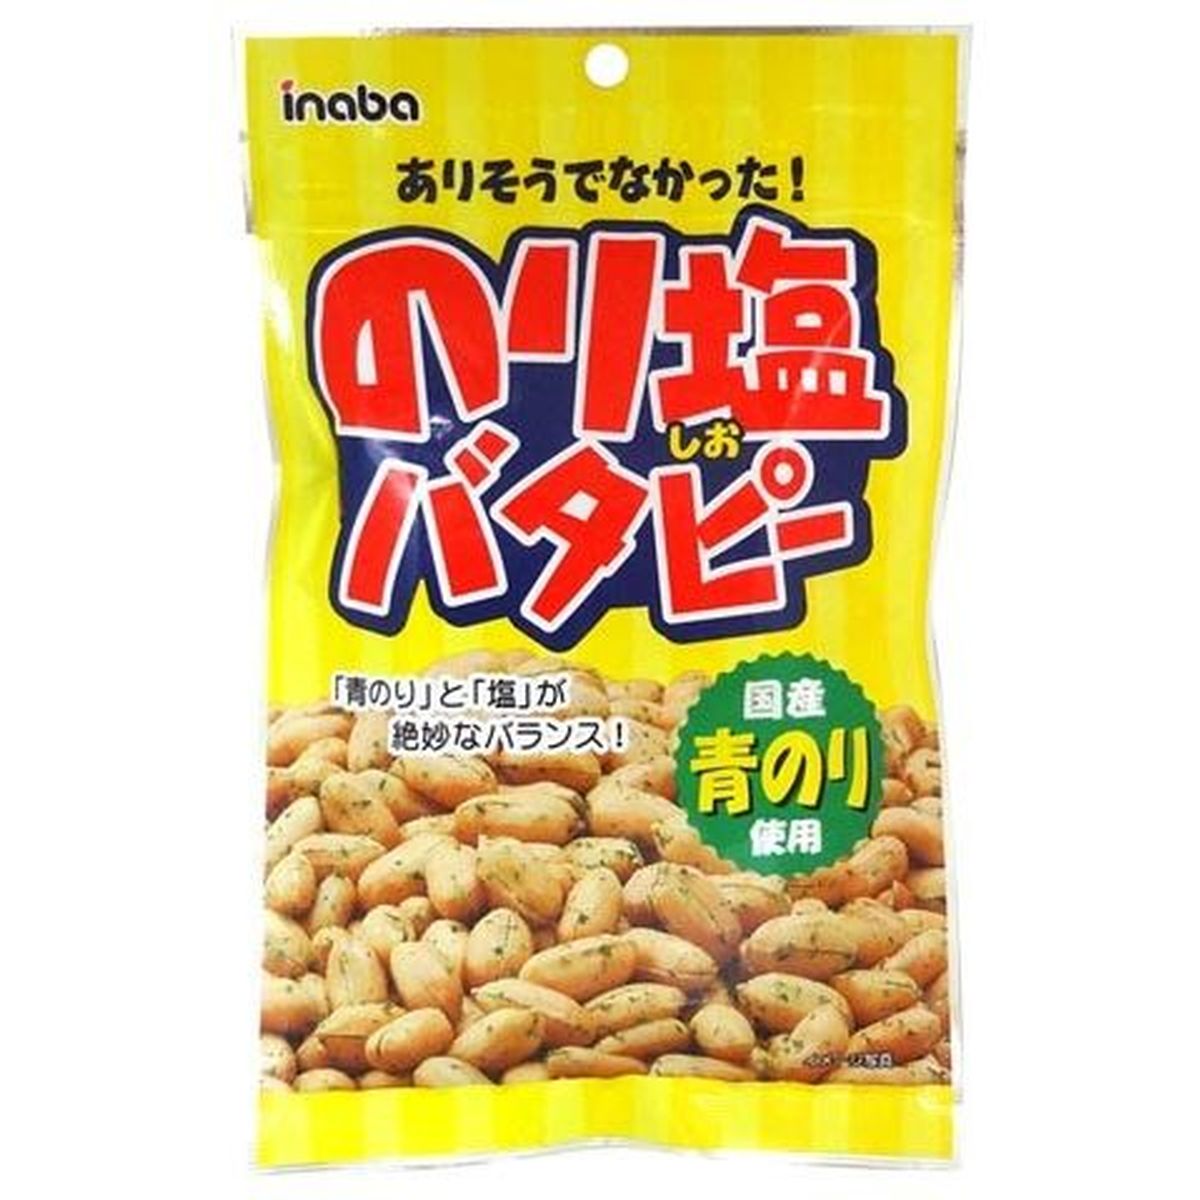 【12個入リ】稲葉ピーナツ ノリ塩 バタピー 110g